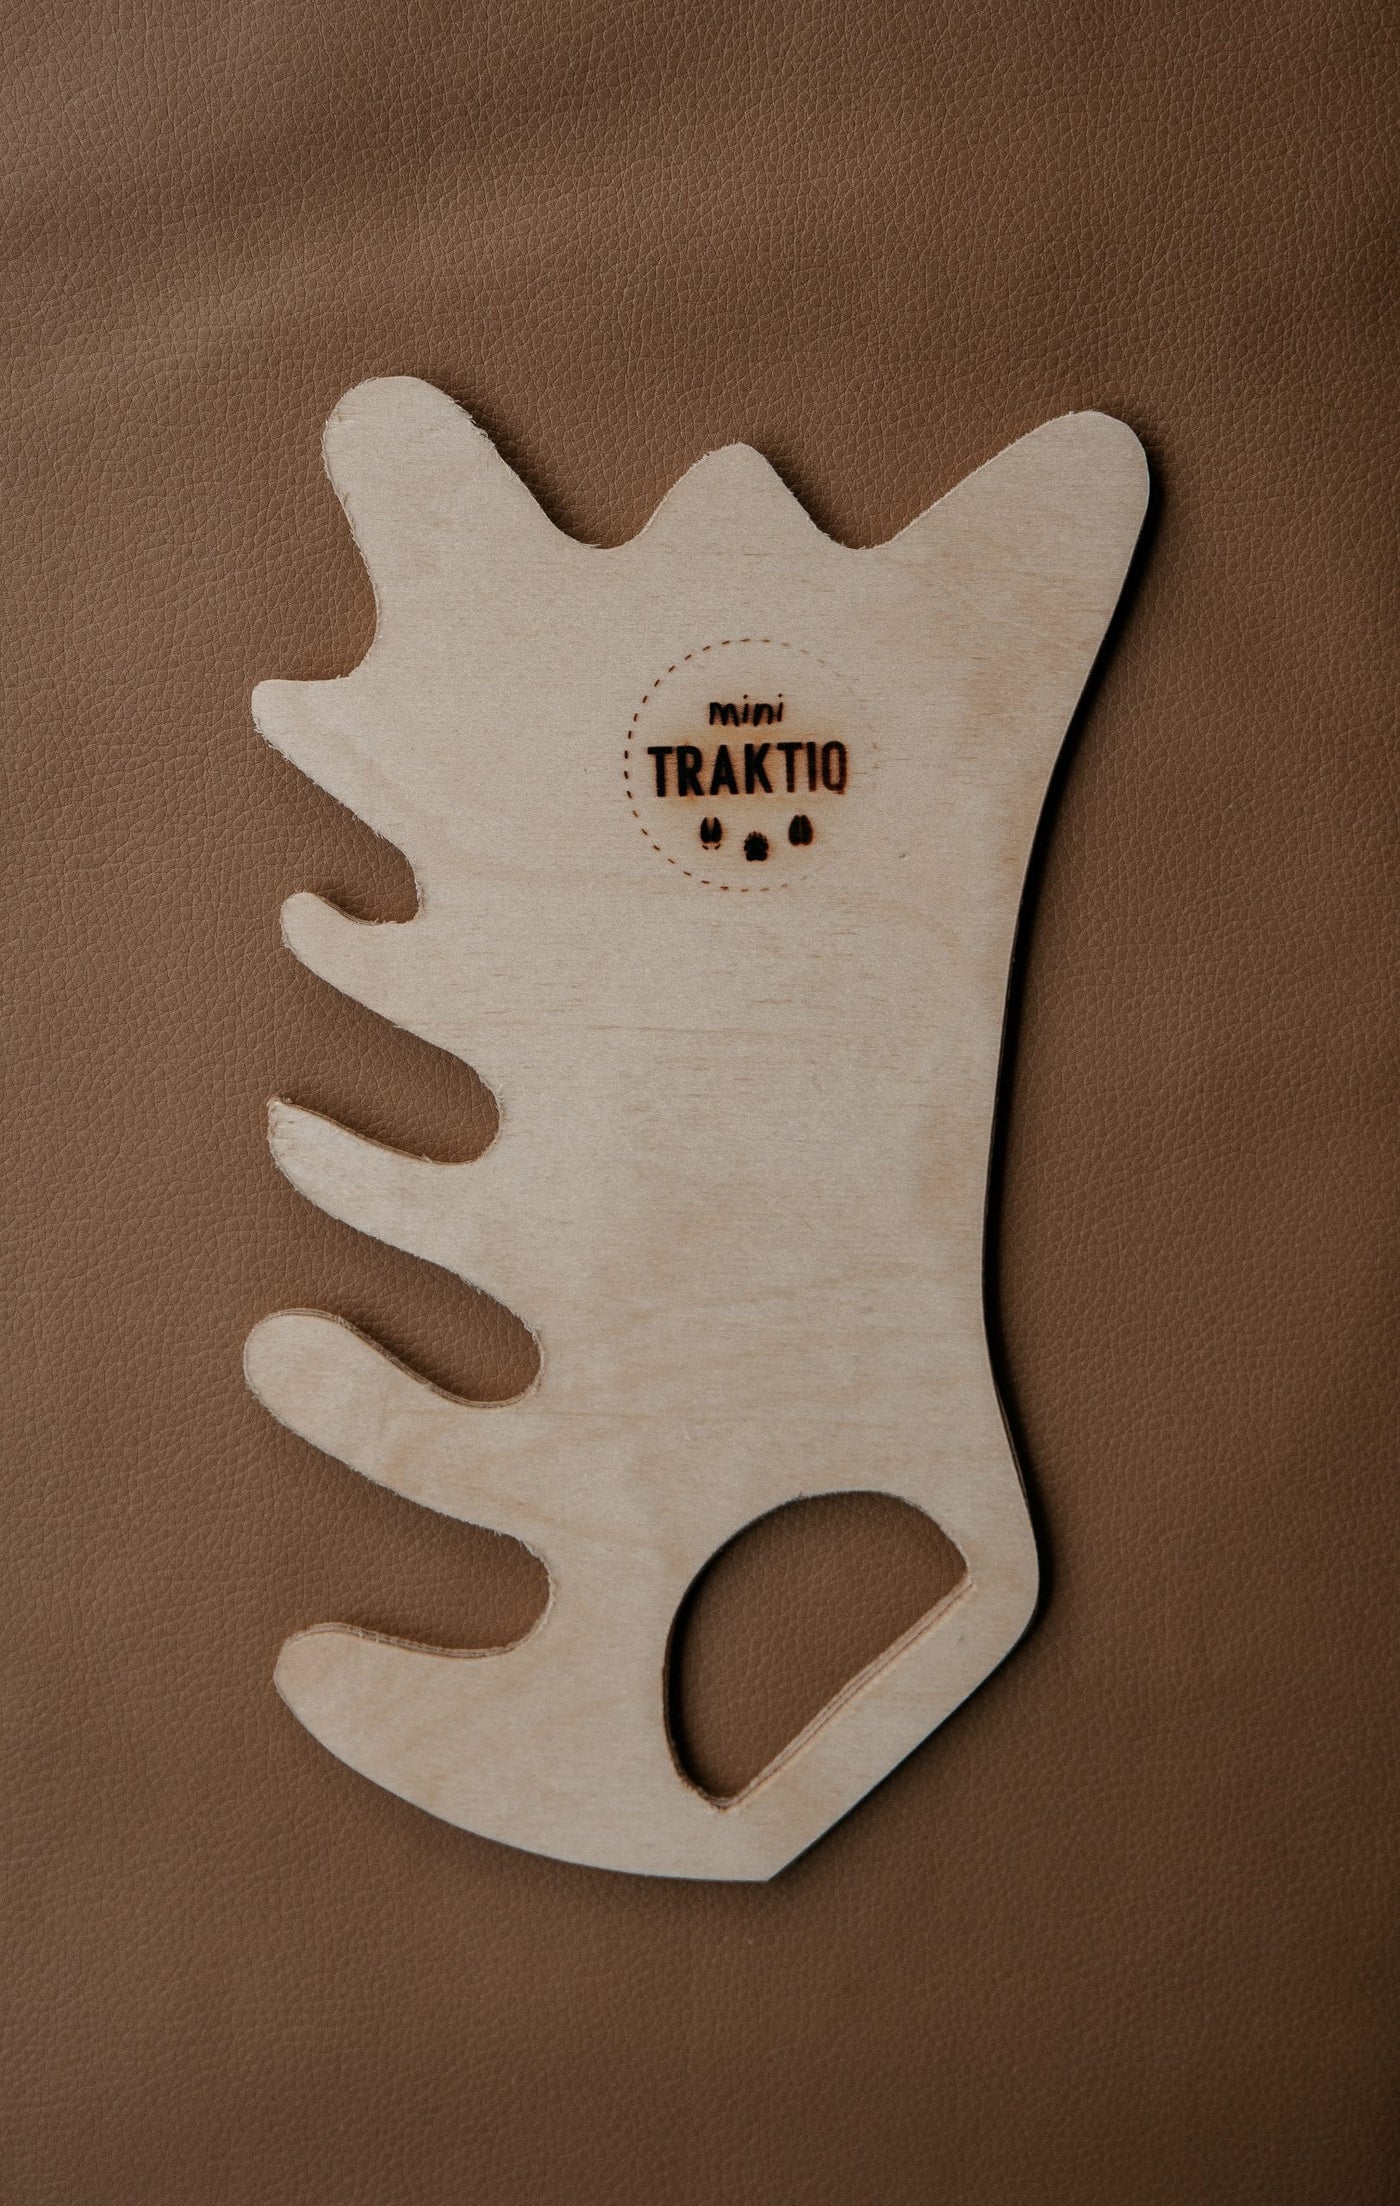 "Mini Traktiq" children's hunting kit